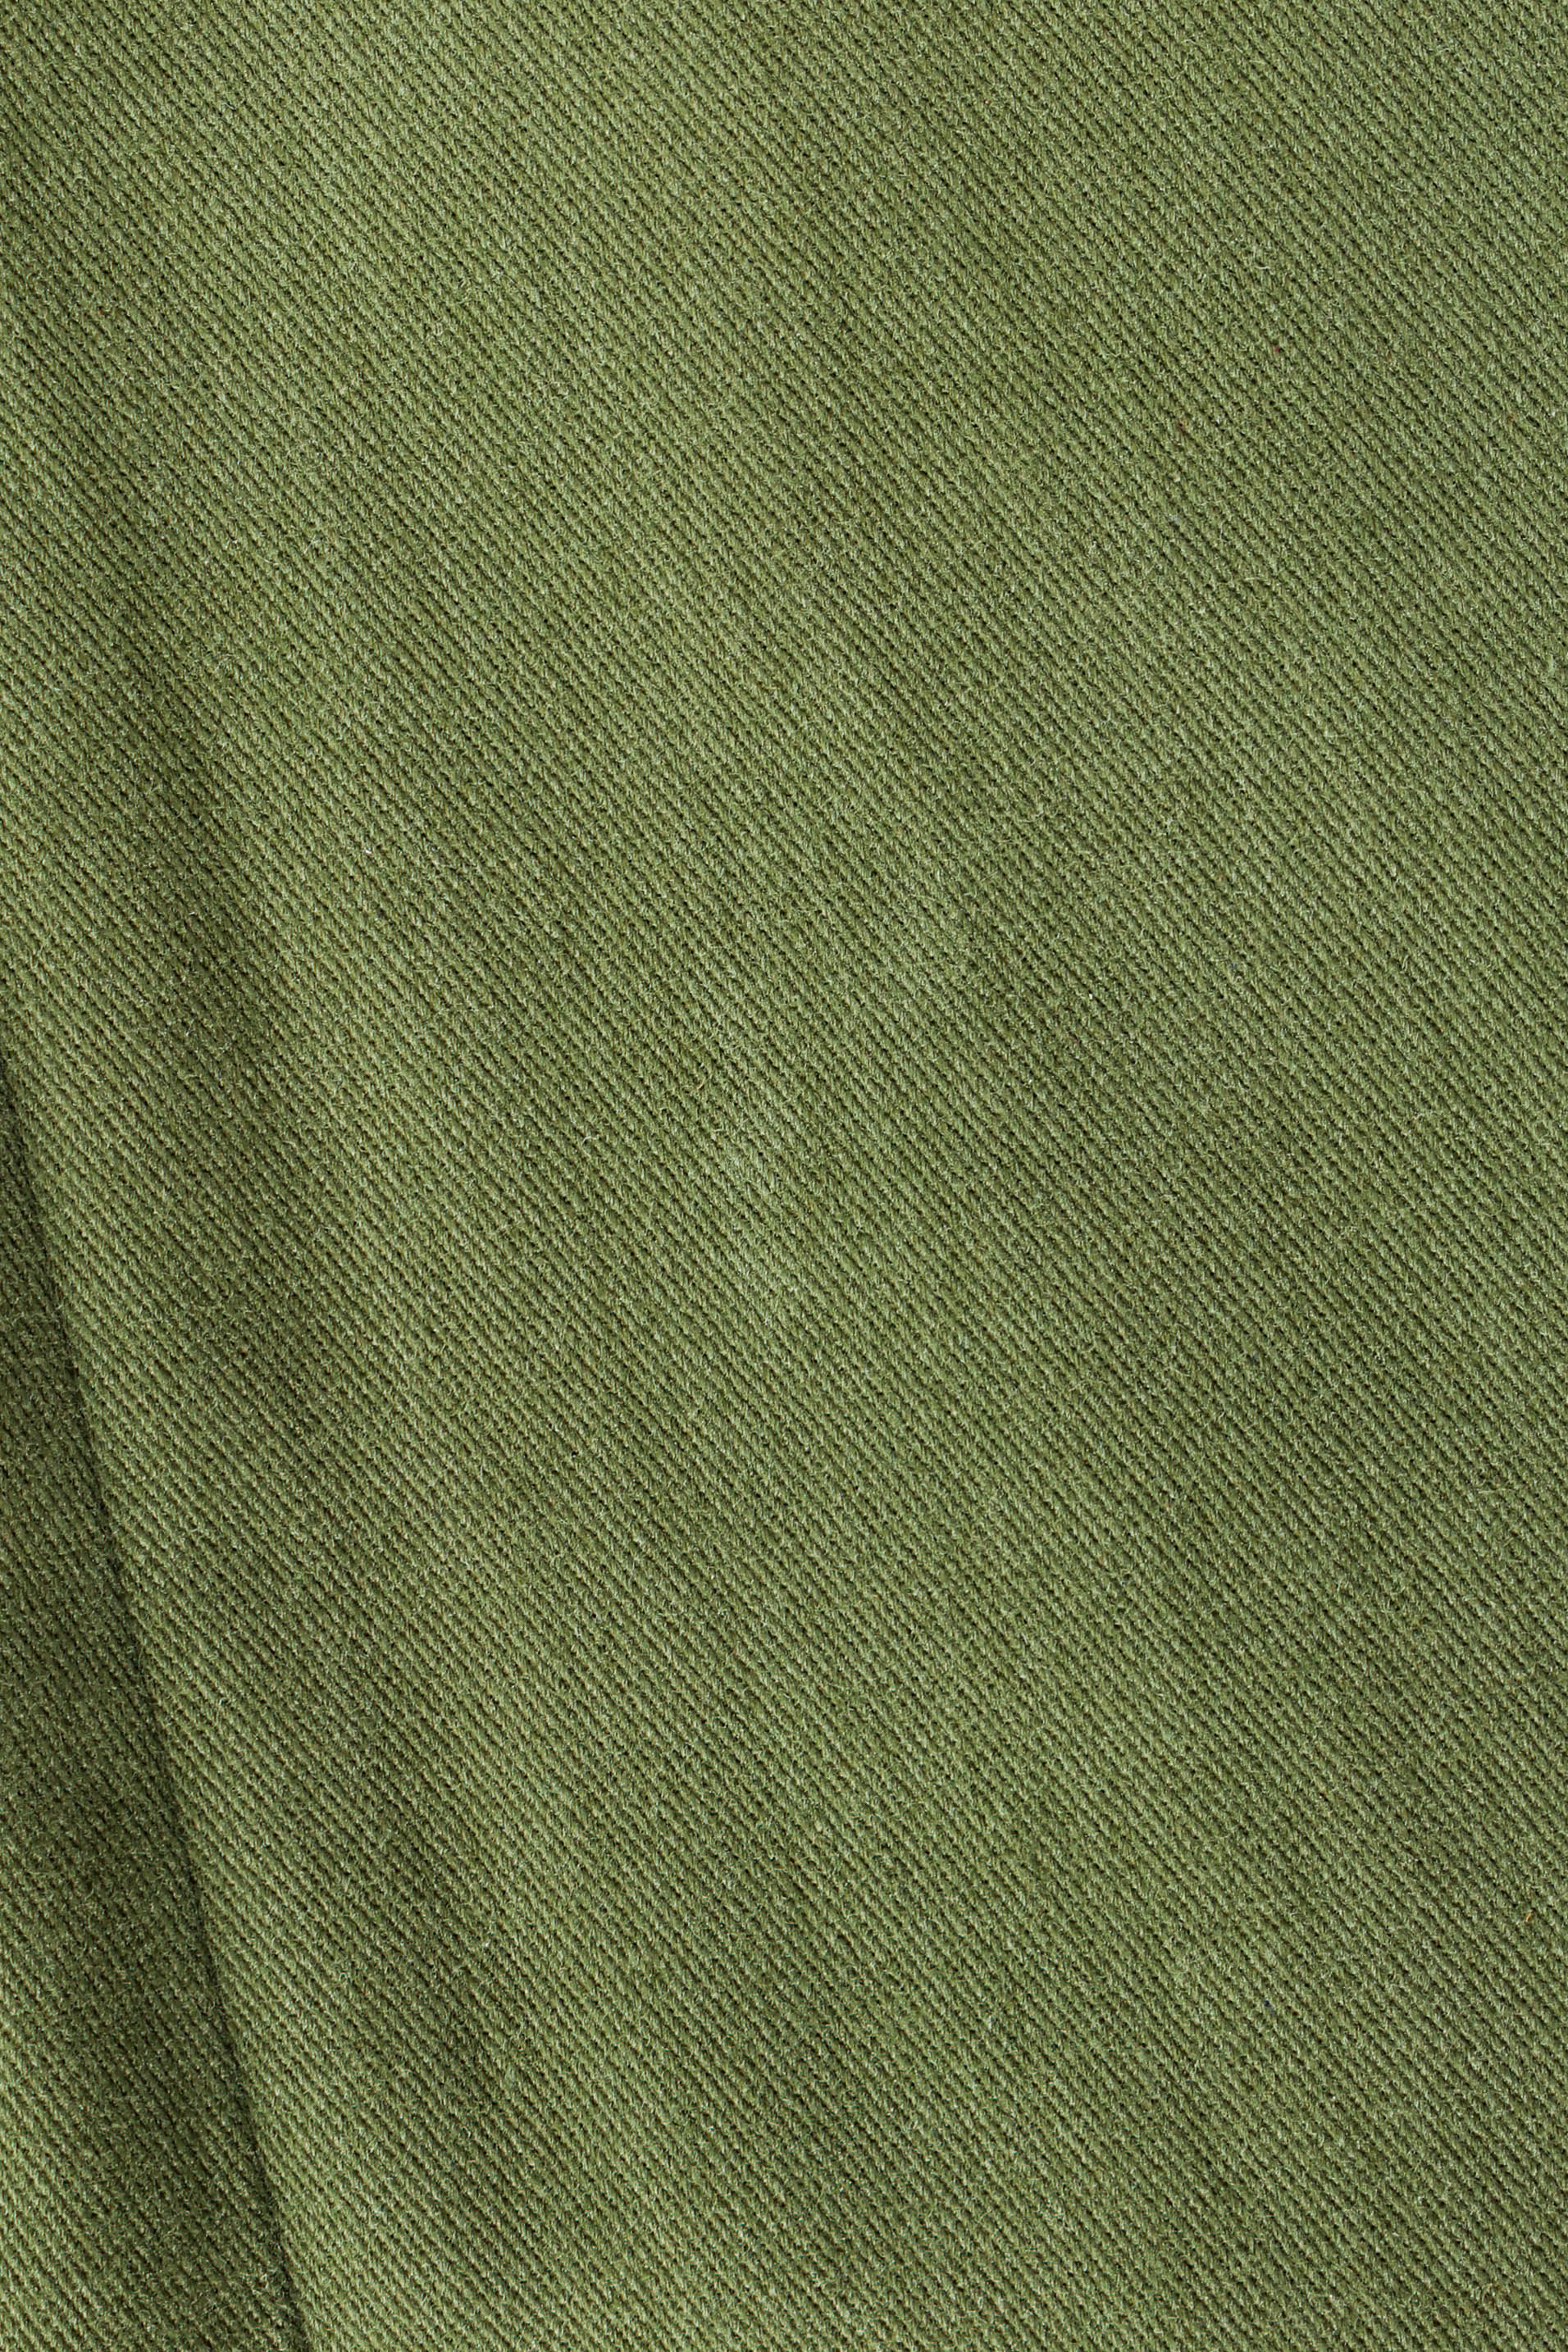 Vintage Yves Saint Laurent Safari Lace Up Dress fabric detail @ Recess LA